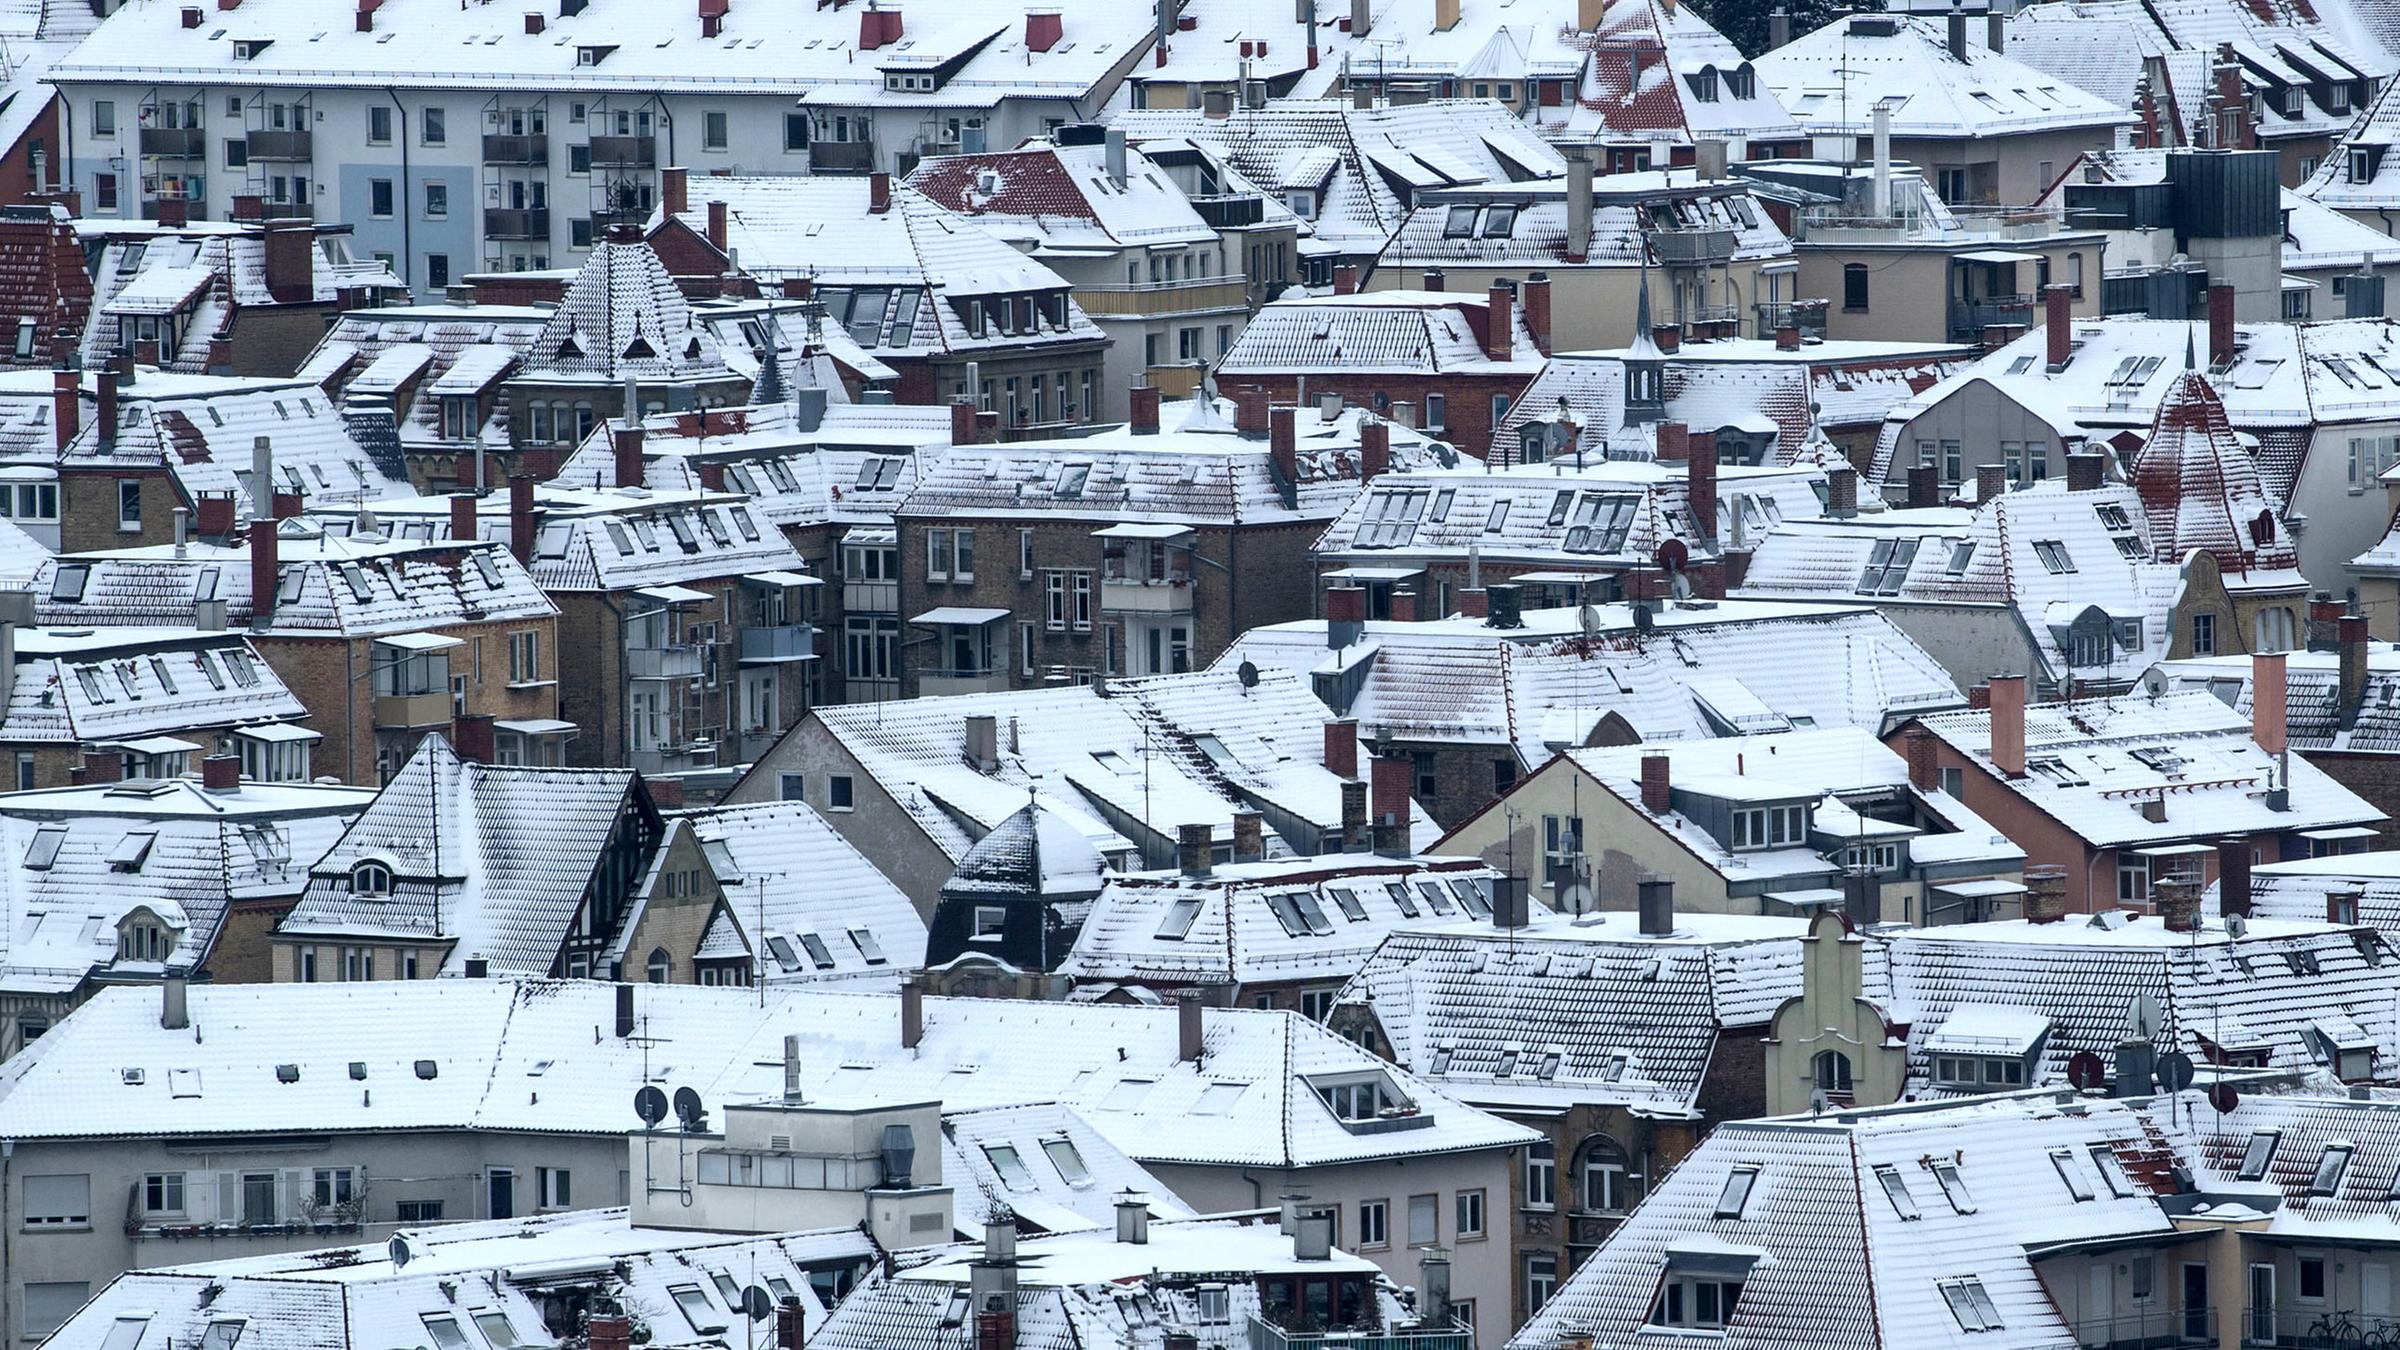 Archiv: Schnee bedeckt die Hausdächer in der Innenstadt von Stuttgart